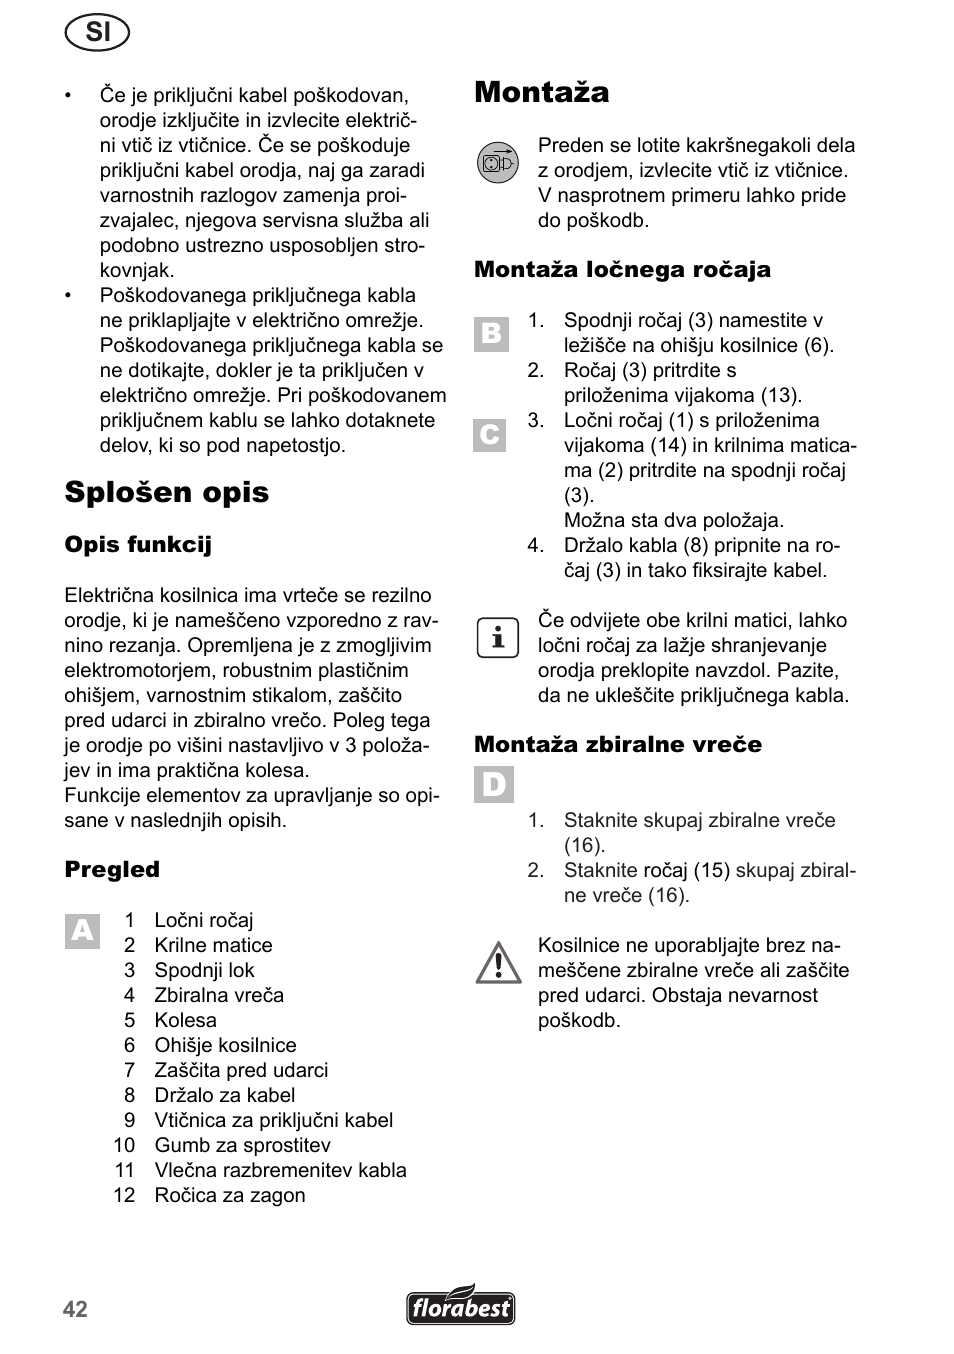 Splošen opis, Montaža | Florabest FRM 1200 A5 User Manual | Page 42 / 90 |  Original mode